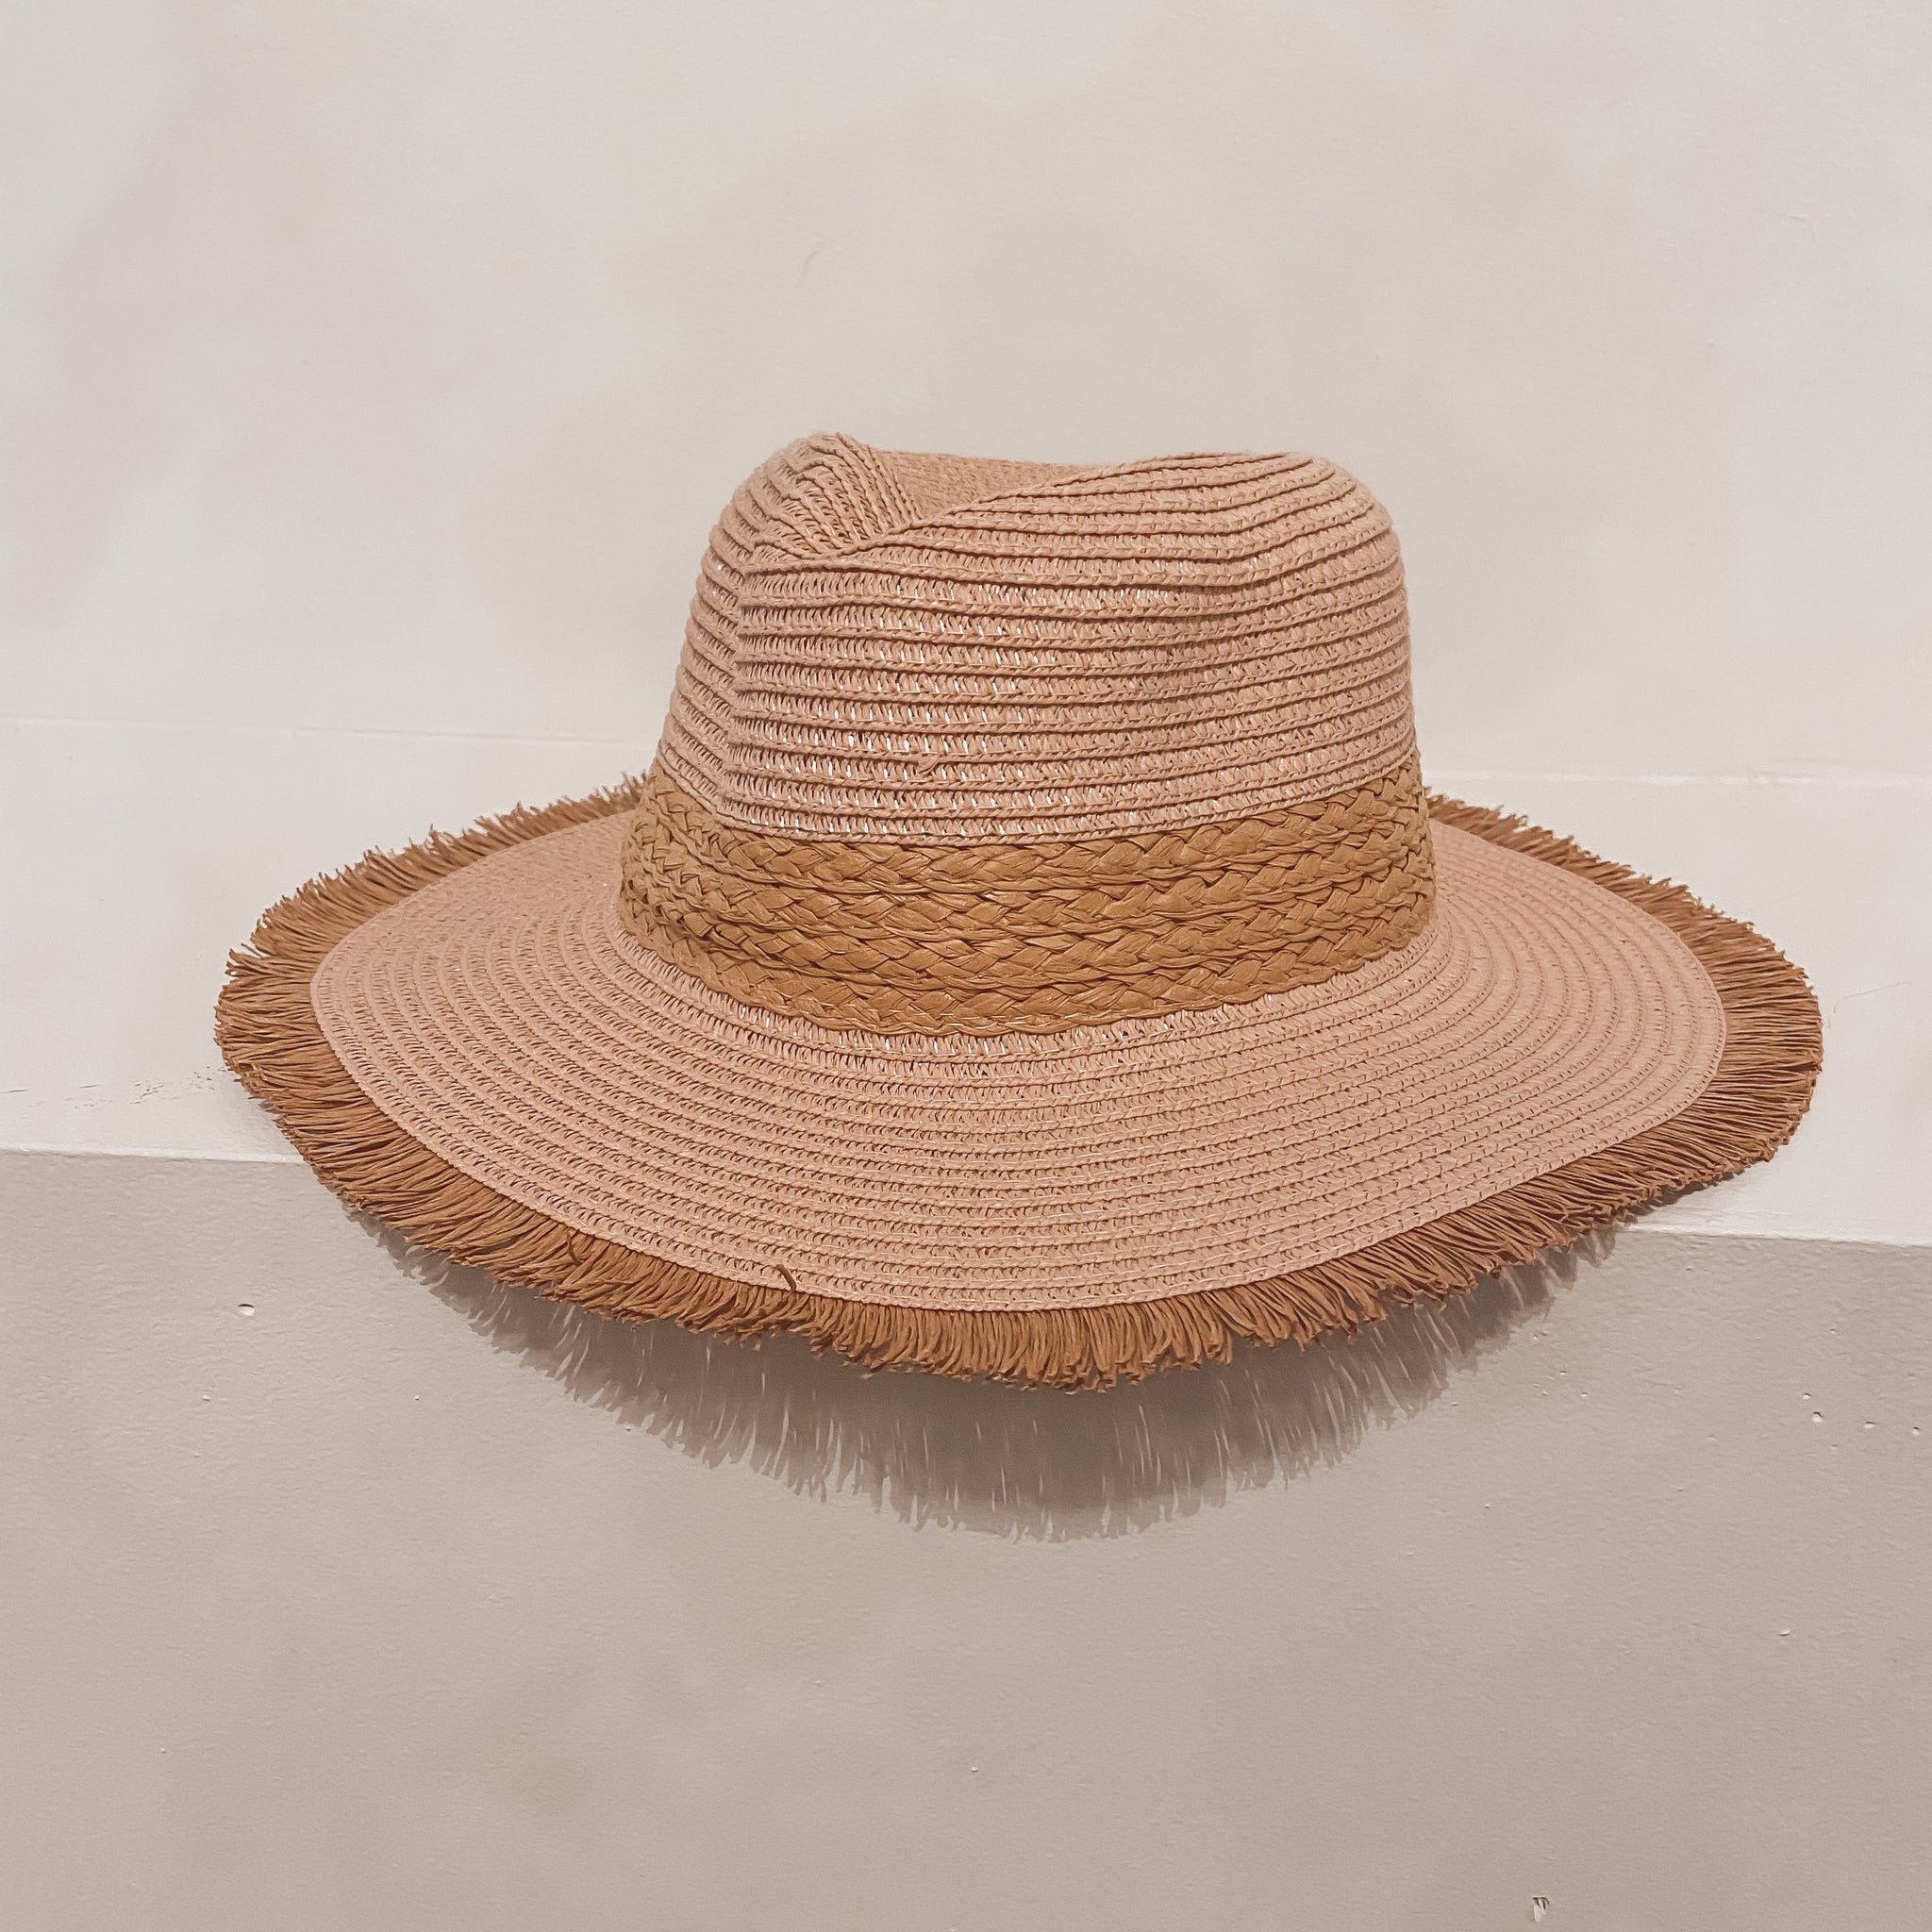 On a Beach Straw Hat in Blush